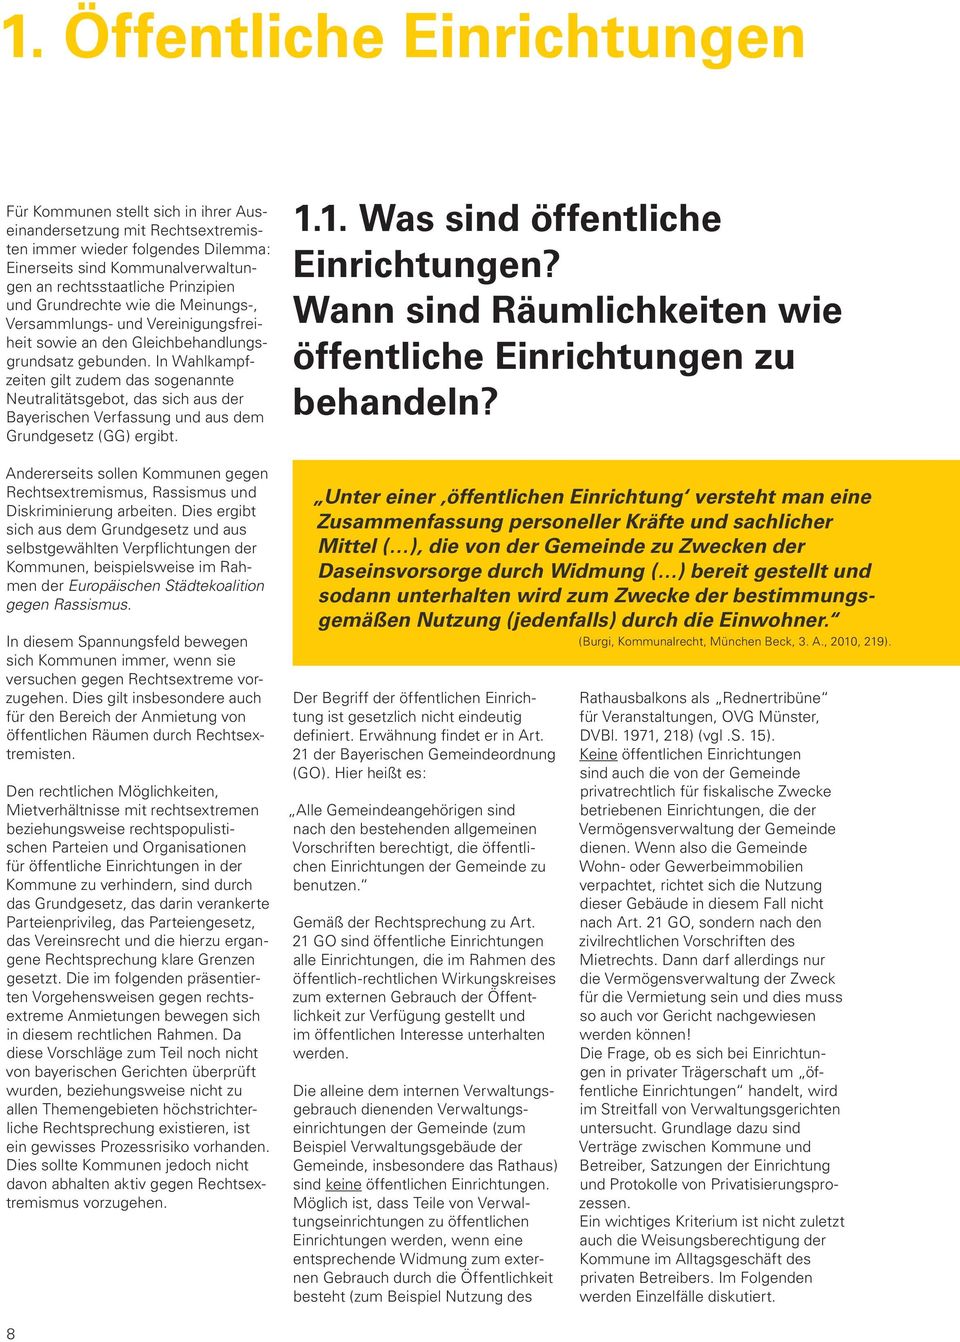 In Wahlkampfzeiten gilt zudem das sogenannte Neutralitätsgebot, das sich aus der Bayerischen Verfassung und aus dem Grundgesetz (GG) ergibt.